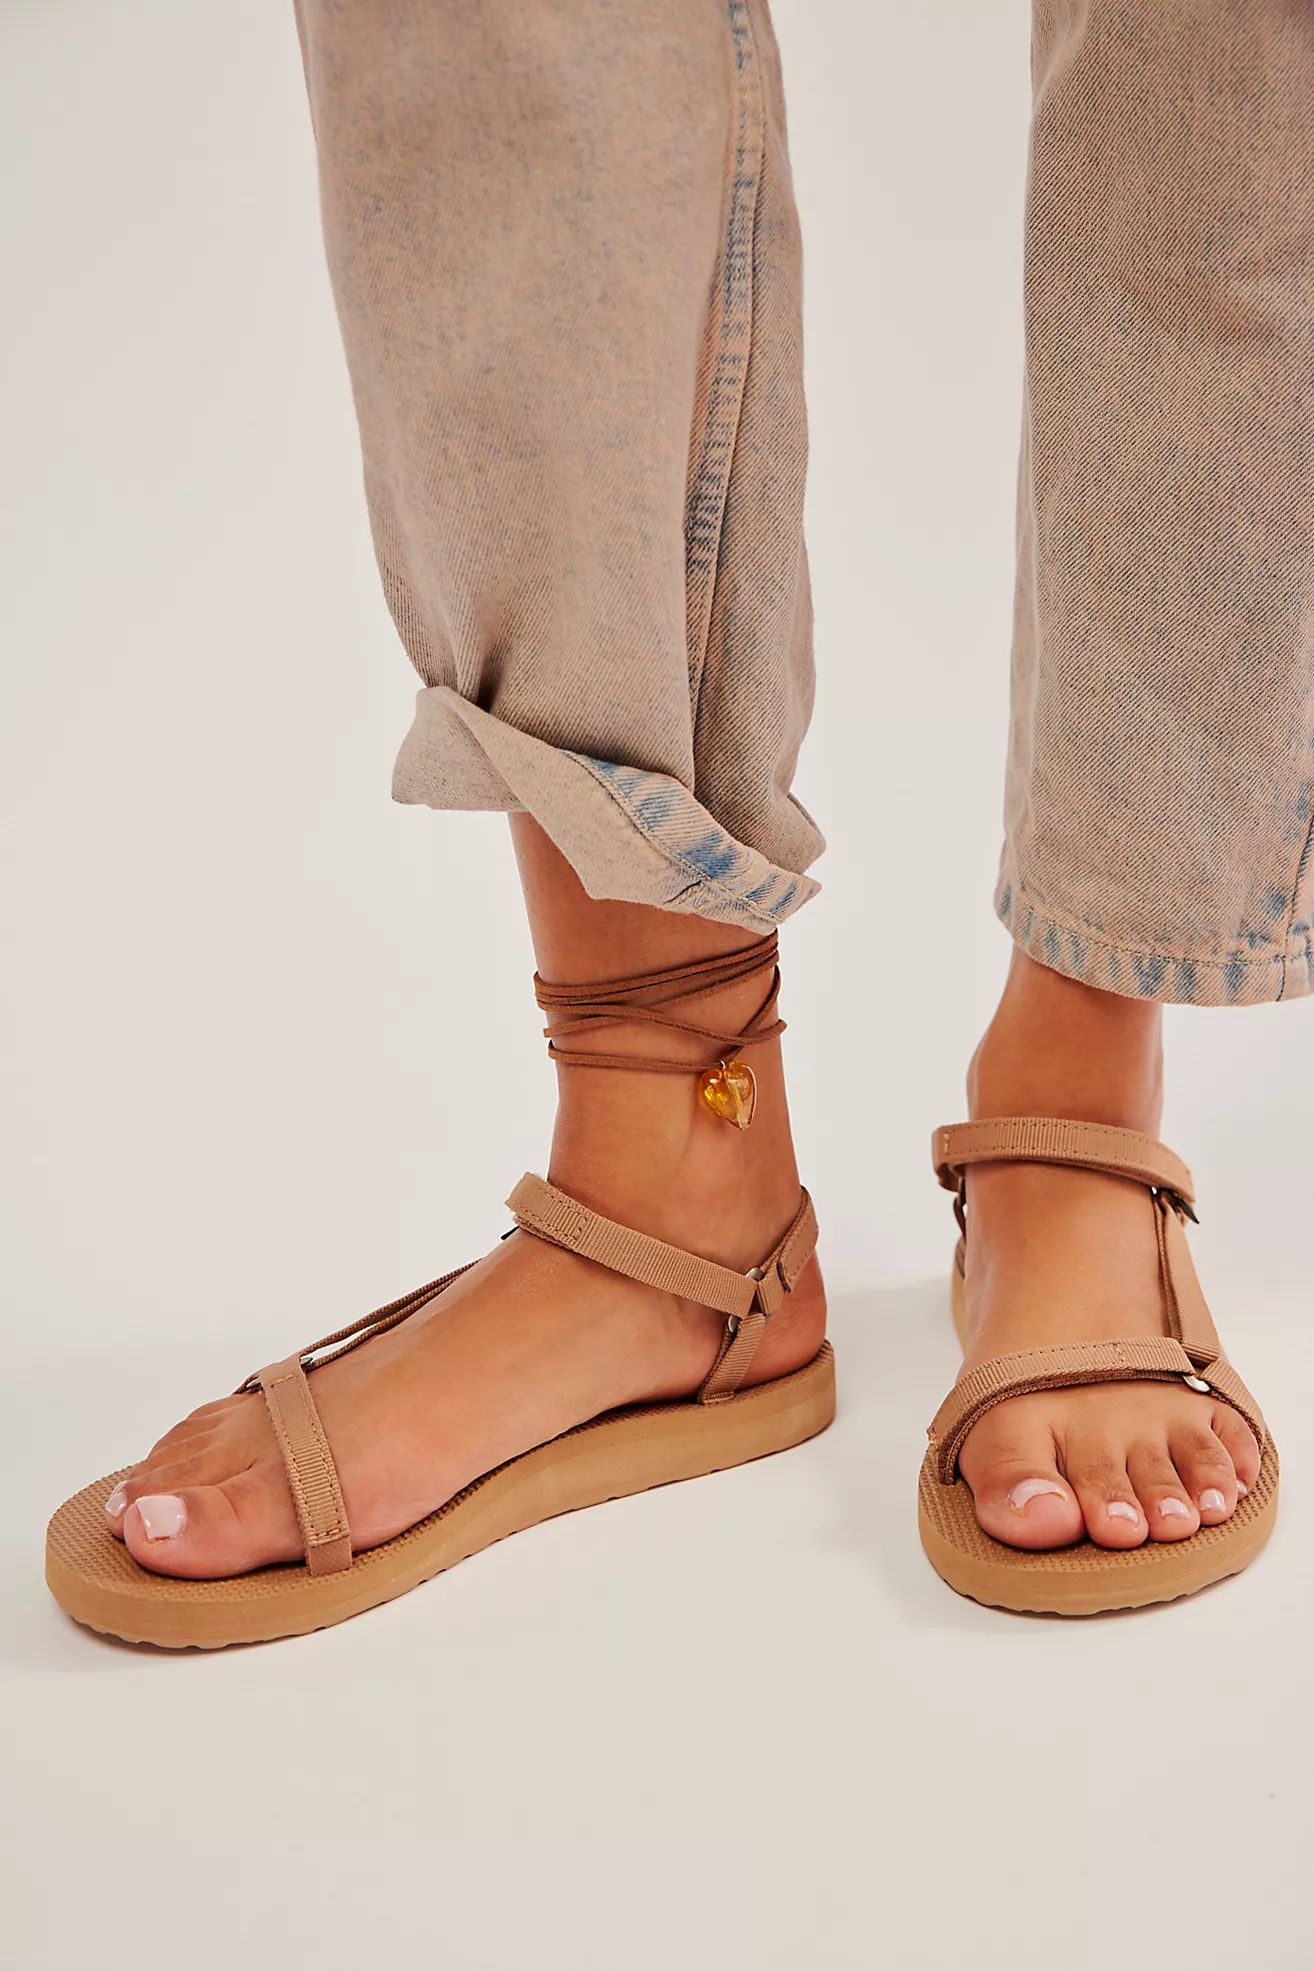 Teva Original Universal Slim Sandals | Free People (Global - UK&FR Excluded)